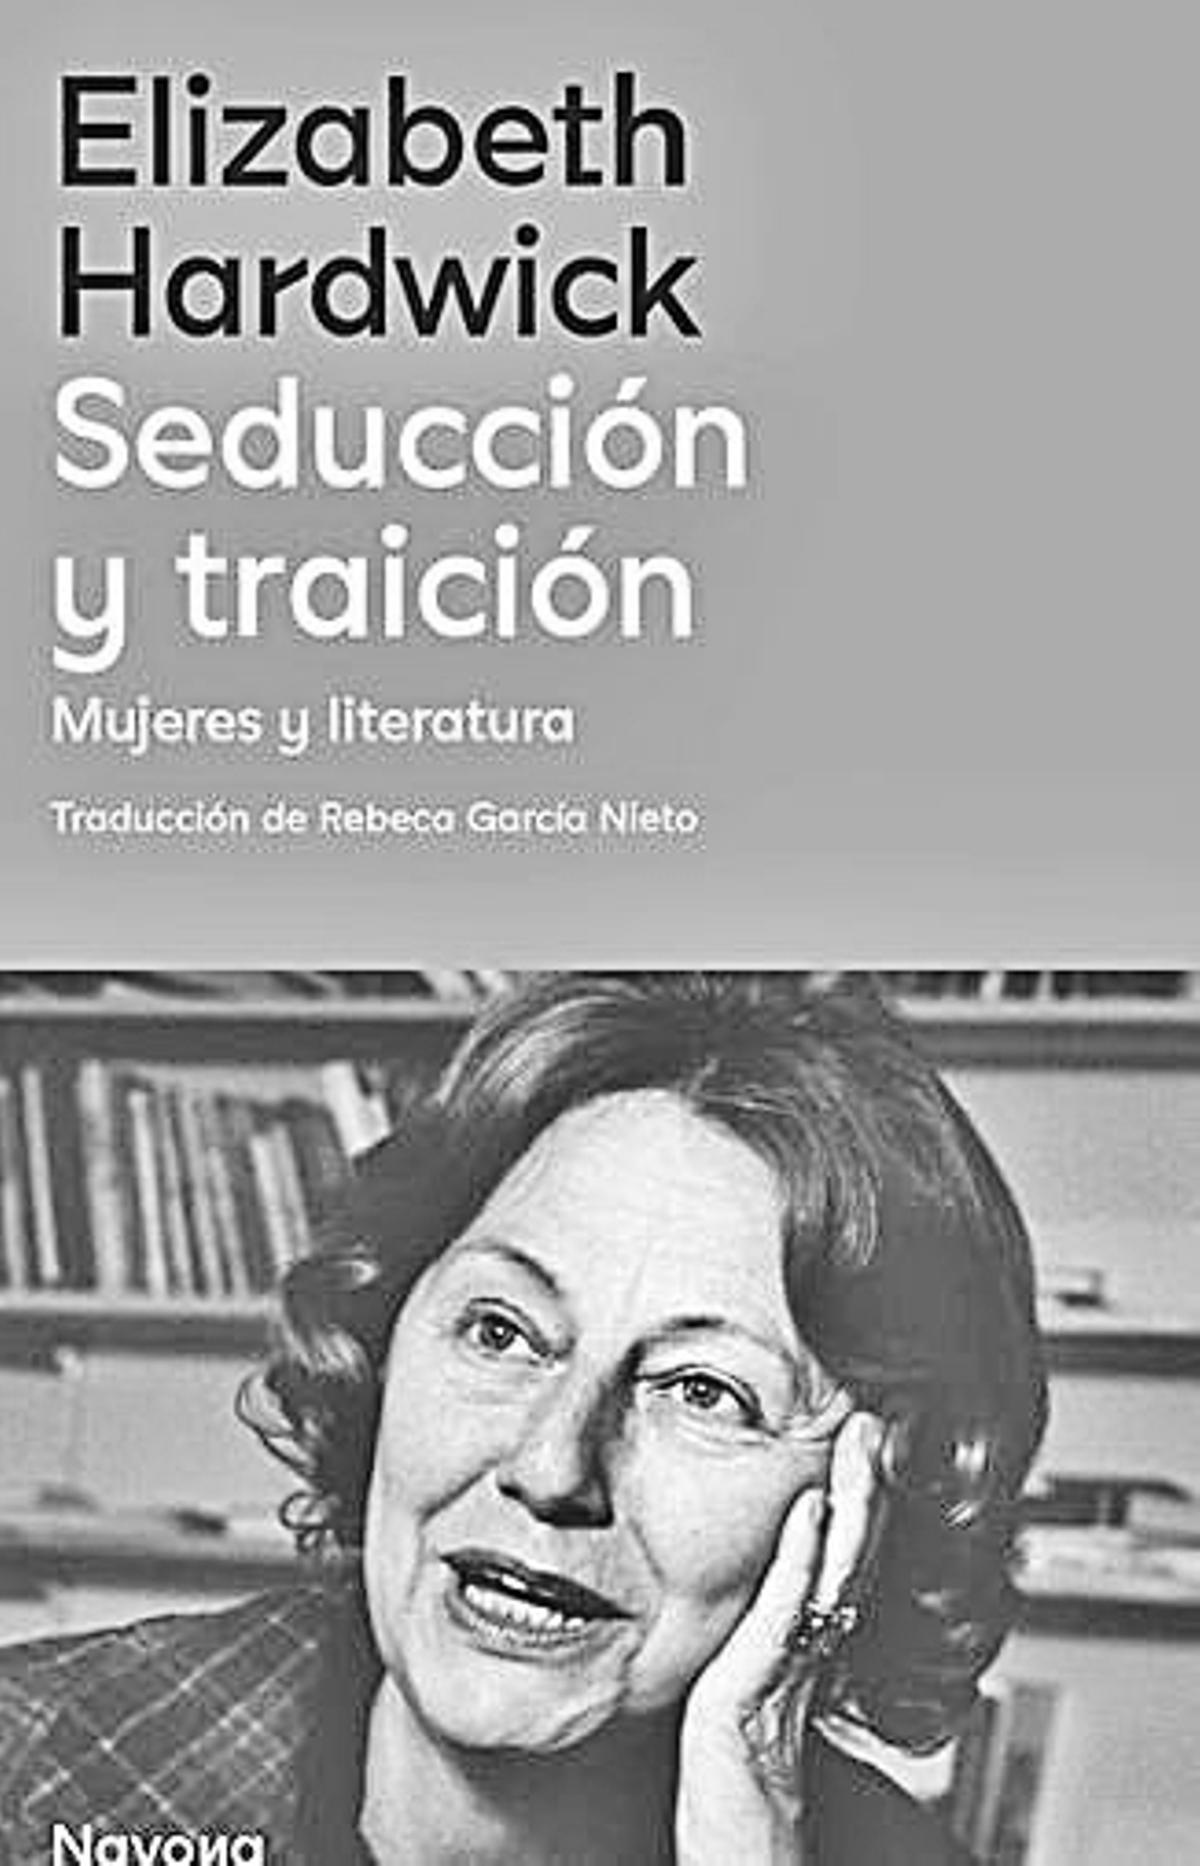 Elizabeth Hardwick  Seducción y traición   Navova  Traducción de Rebeca Garcia Nieto   264 páginas / 23 euros